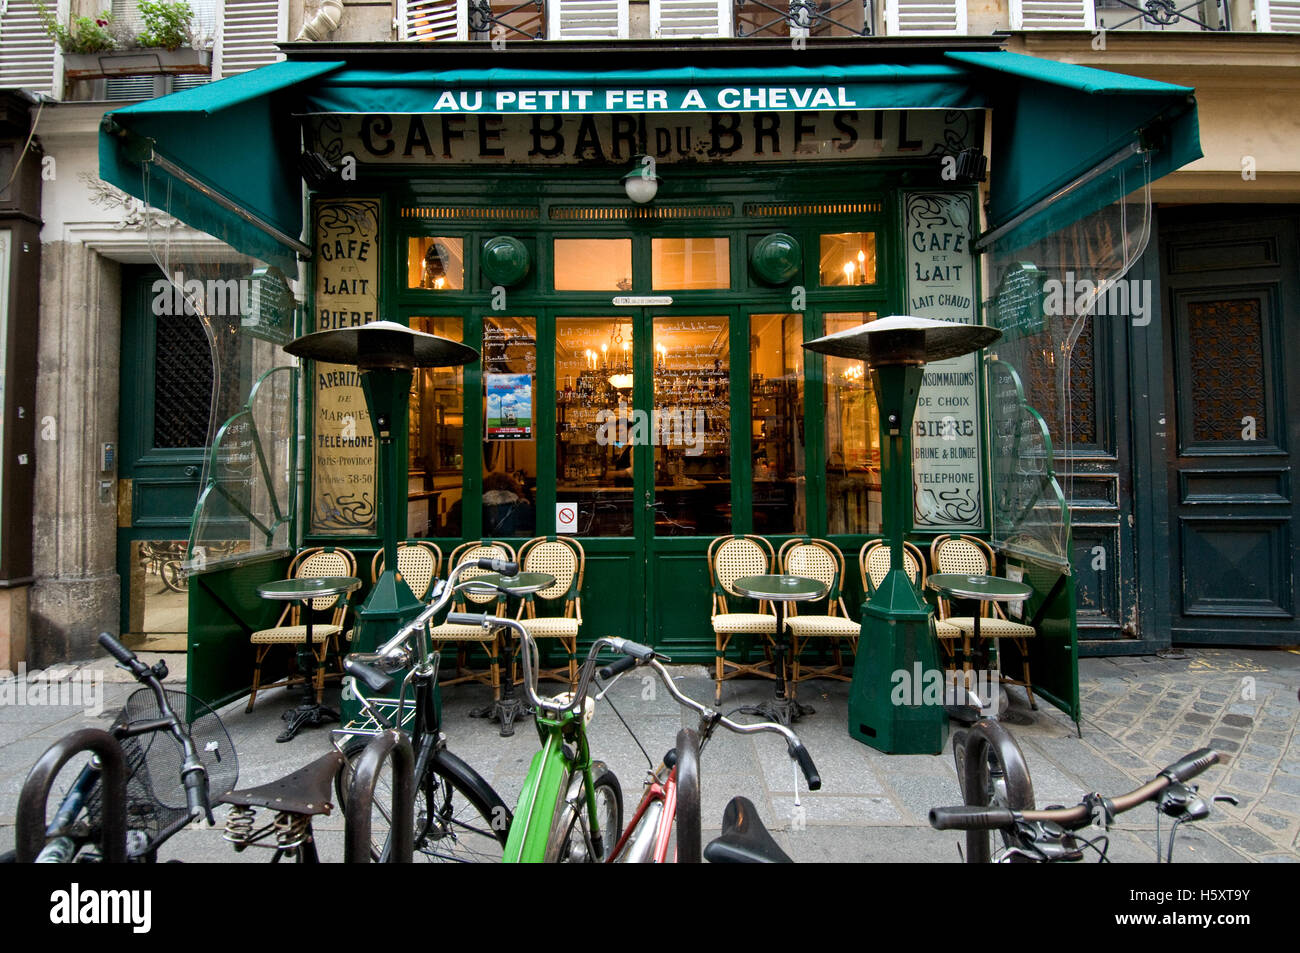 Au Petit Fer a Cheval, in the Marais district, Paris, France Stock Photo -  Alamy